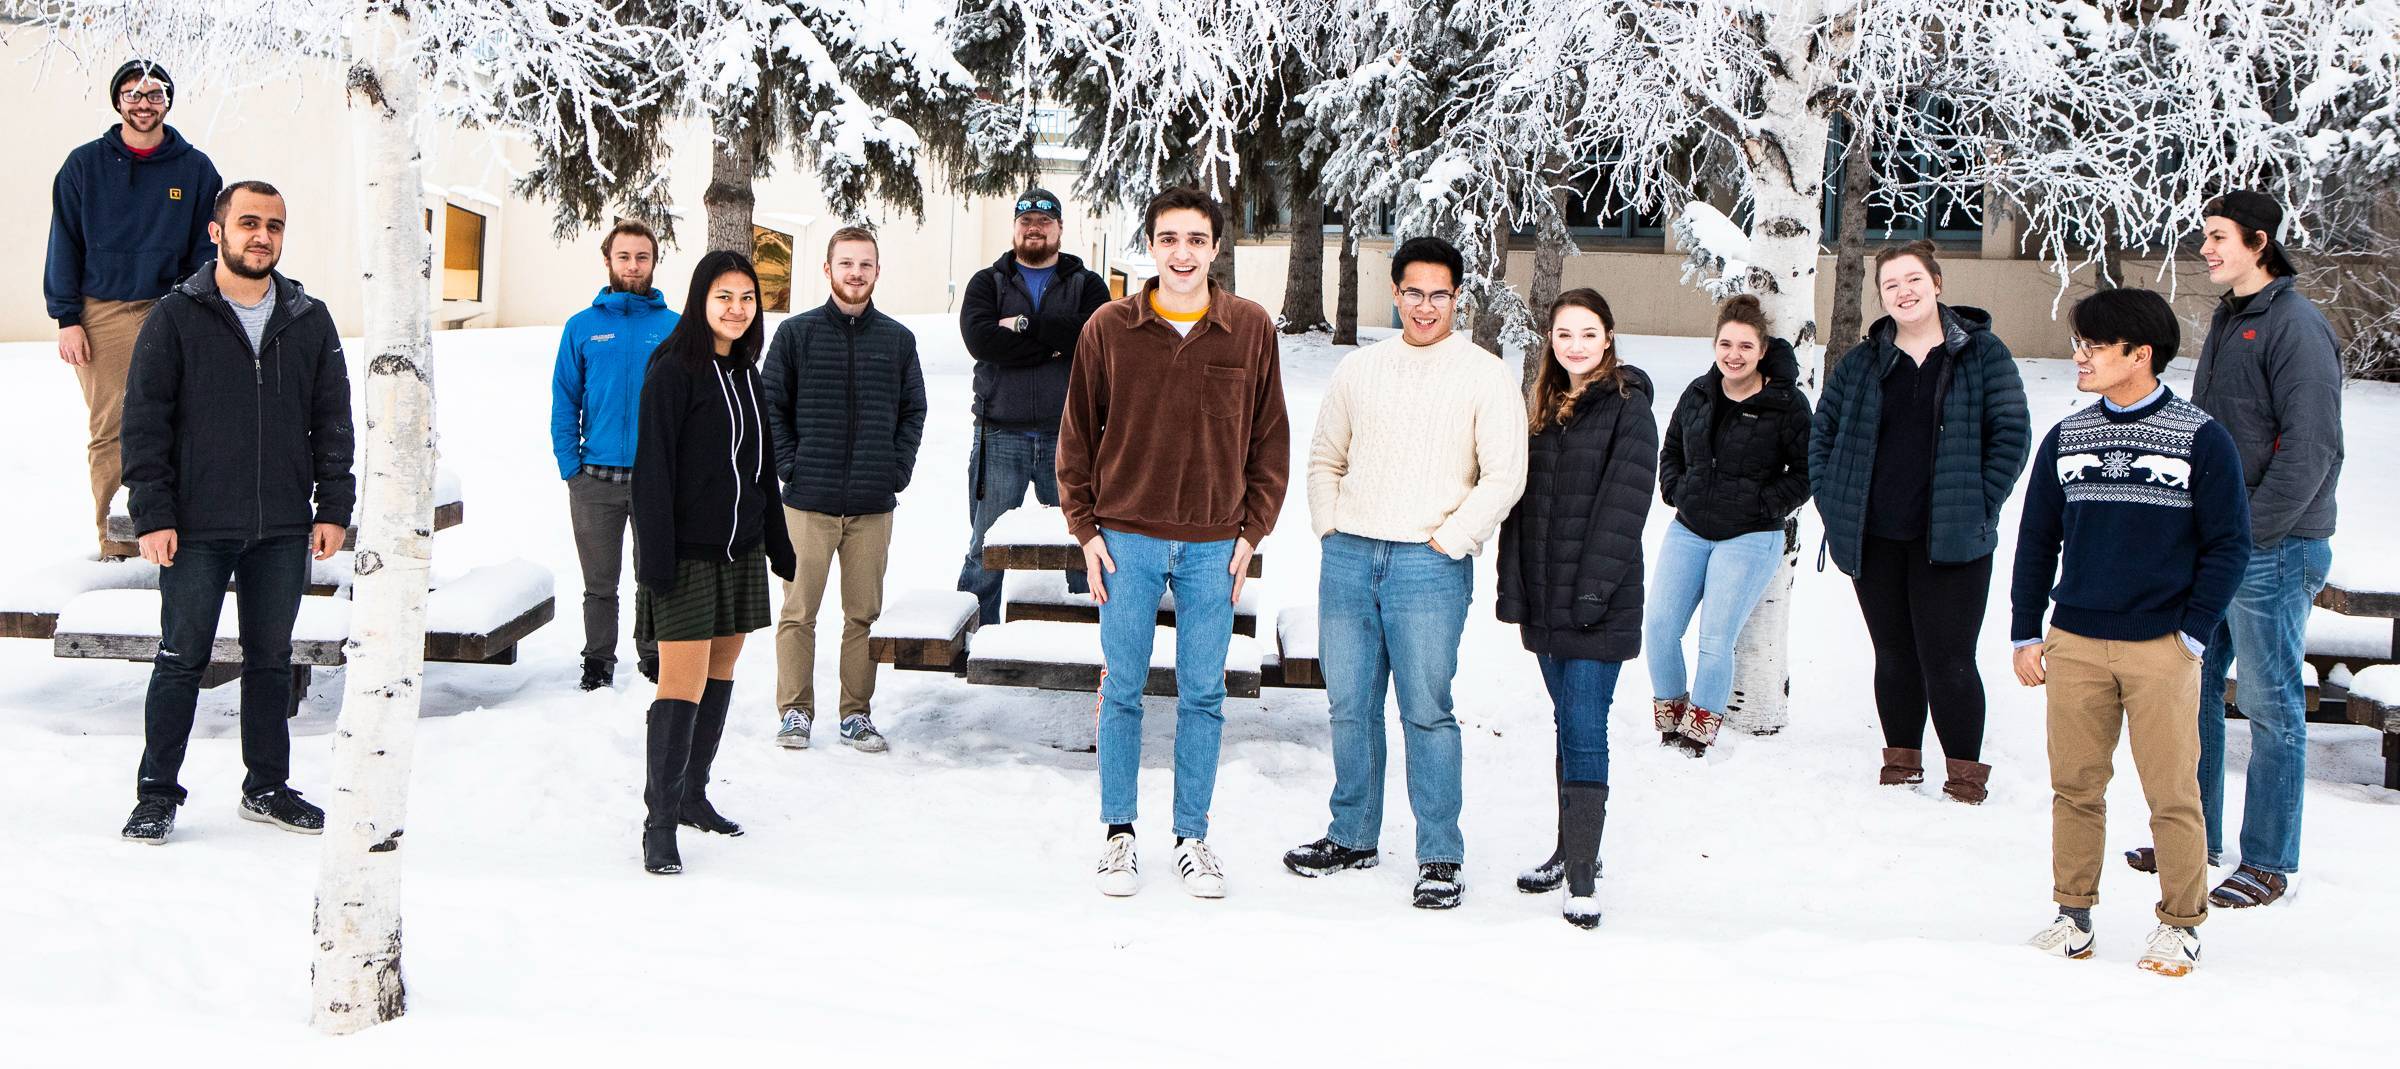 UAF Student Leadership Involvement team photo